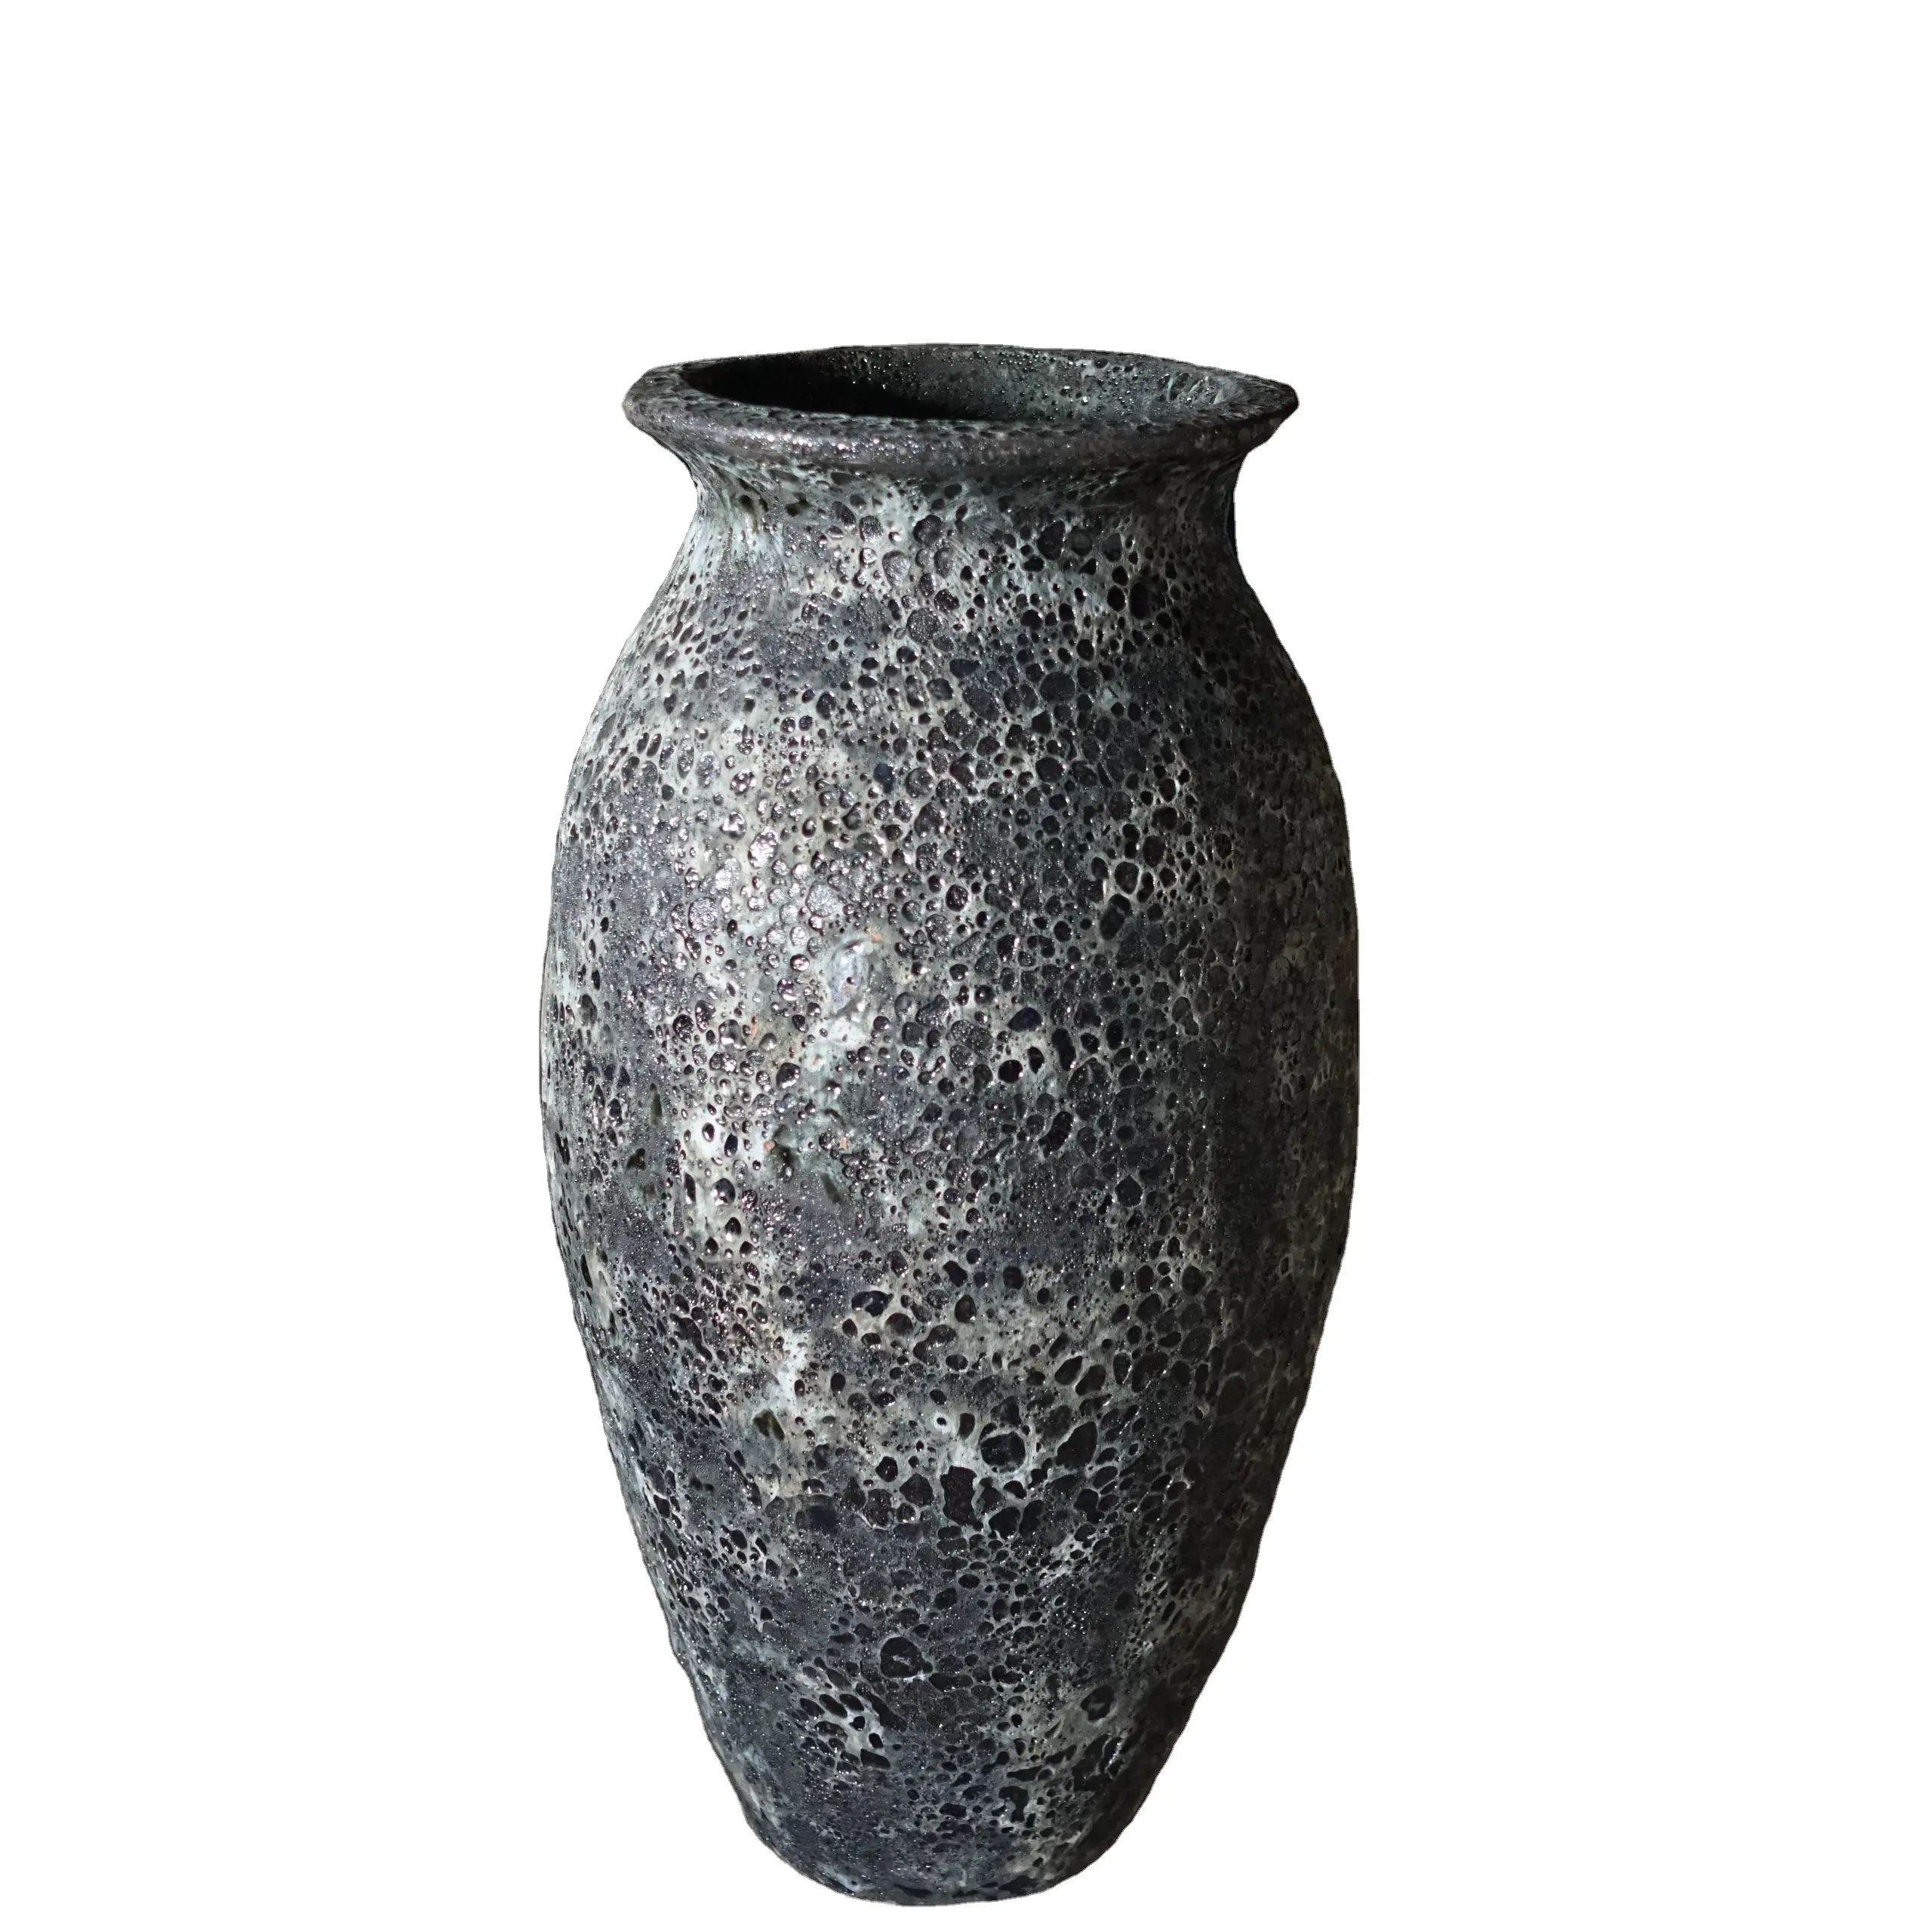 Modelo de estilo Atlántico OCR90TLS1, macetas de cerámica de gran tamaño de Vietnam, jarrón alto negro, urnas y tarros para flores al aire libre